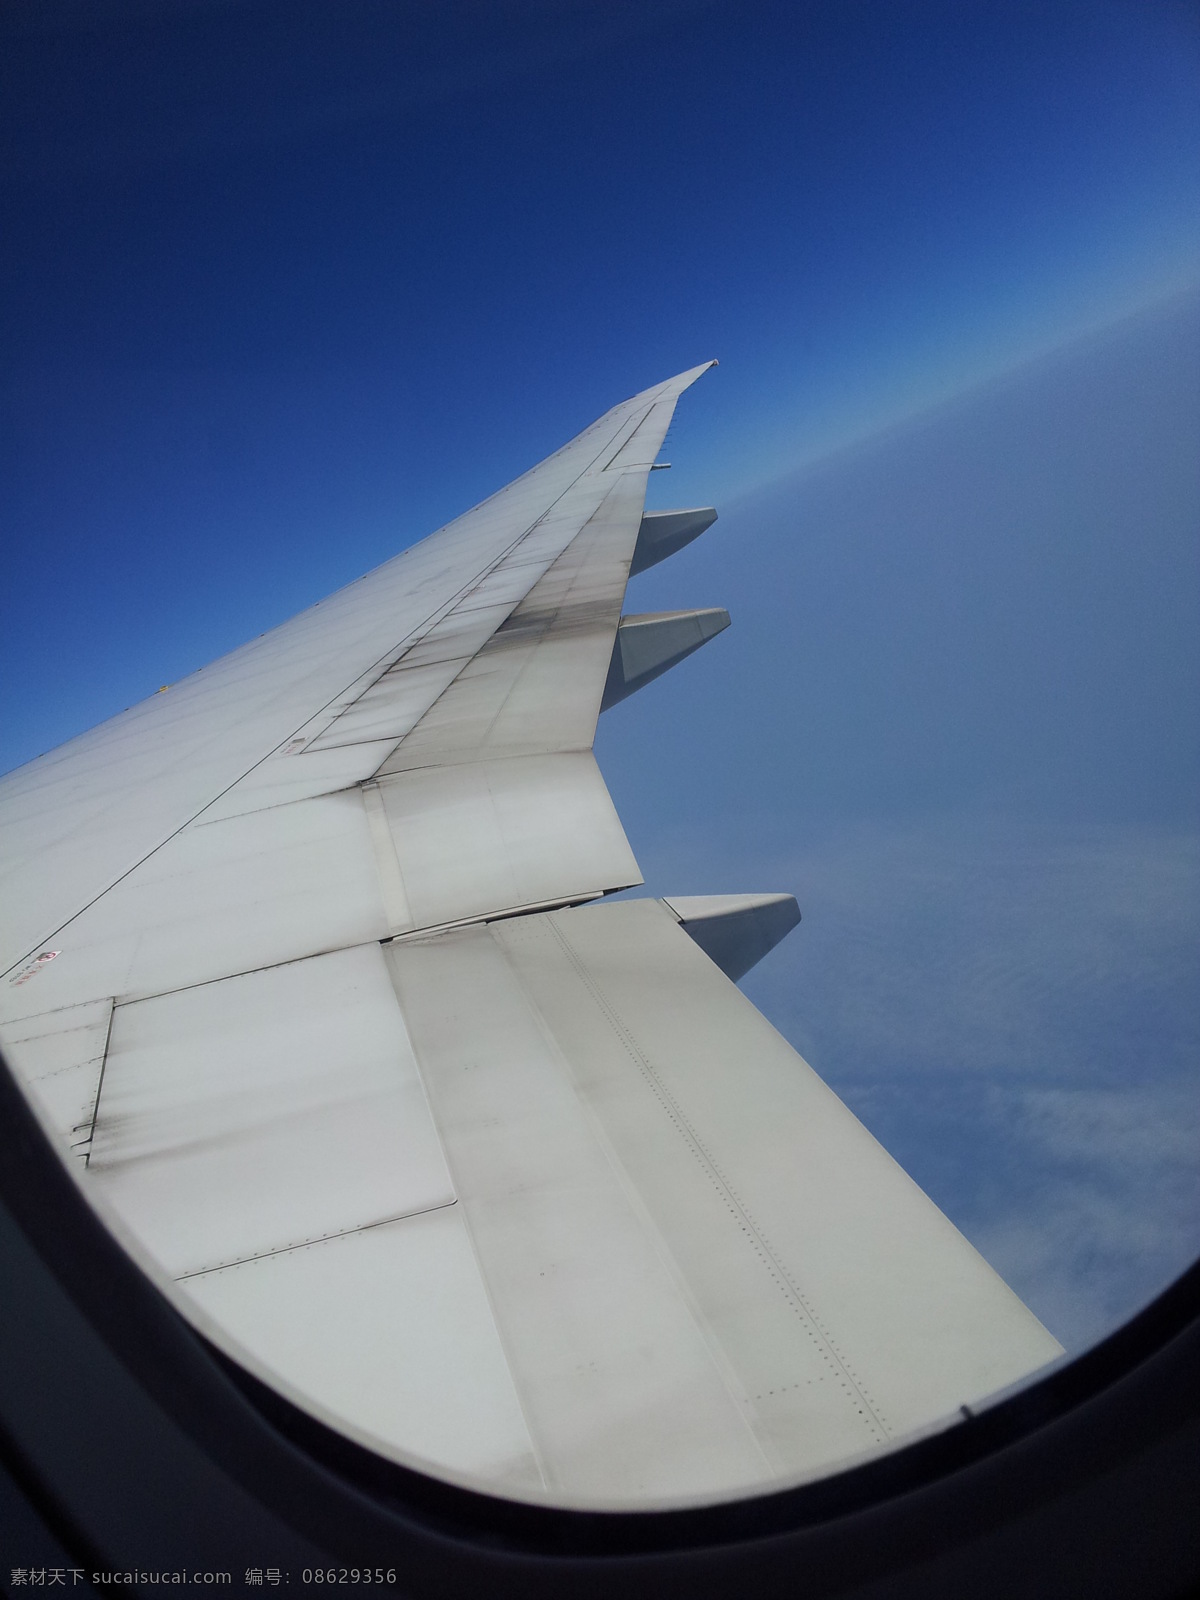 机翼 翅膀 窗 飞行 高空 国外旅游 旅游摄影 psd源文件